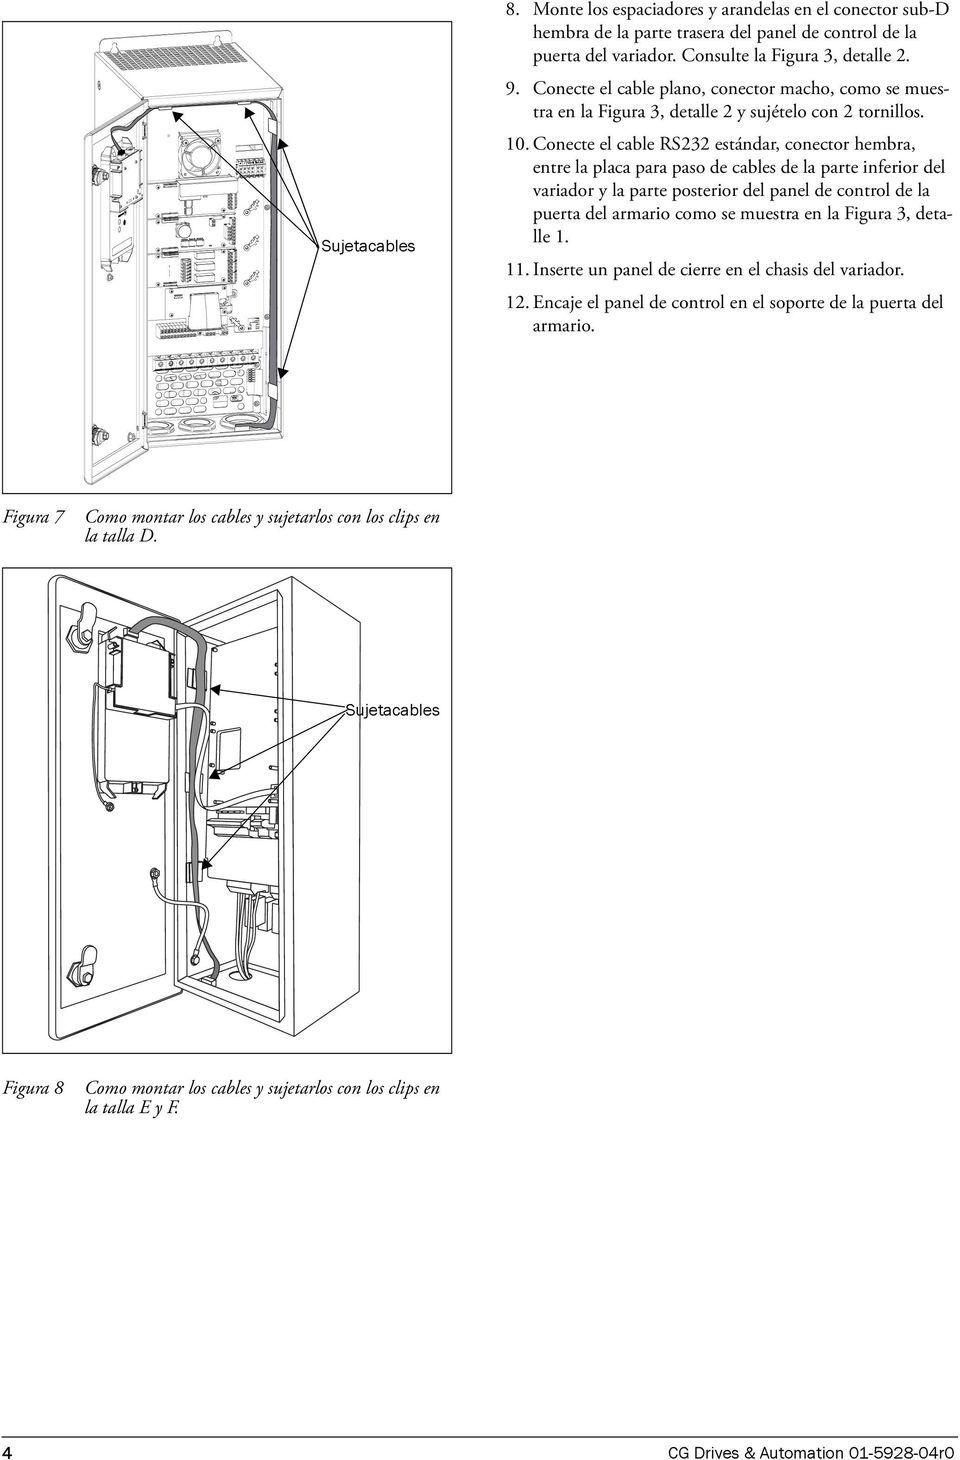 Conecte el cable RS232 estándar, conector hembra, entre la placa para paso de cables de la parte inferior del variador y la parte posterior del panel de control de la puerta del armario como se